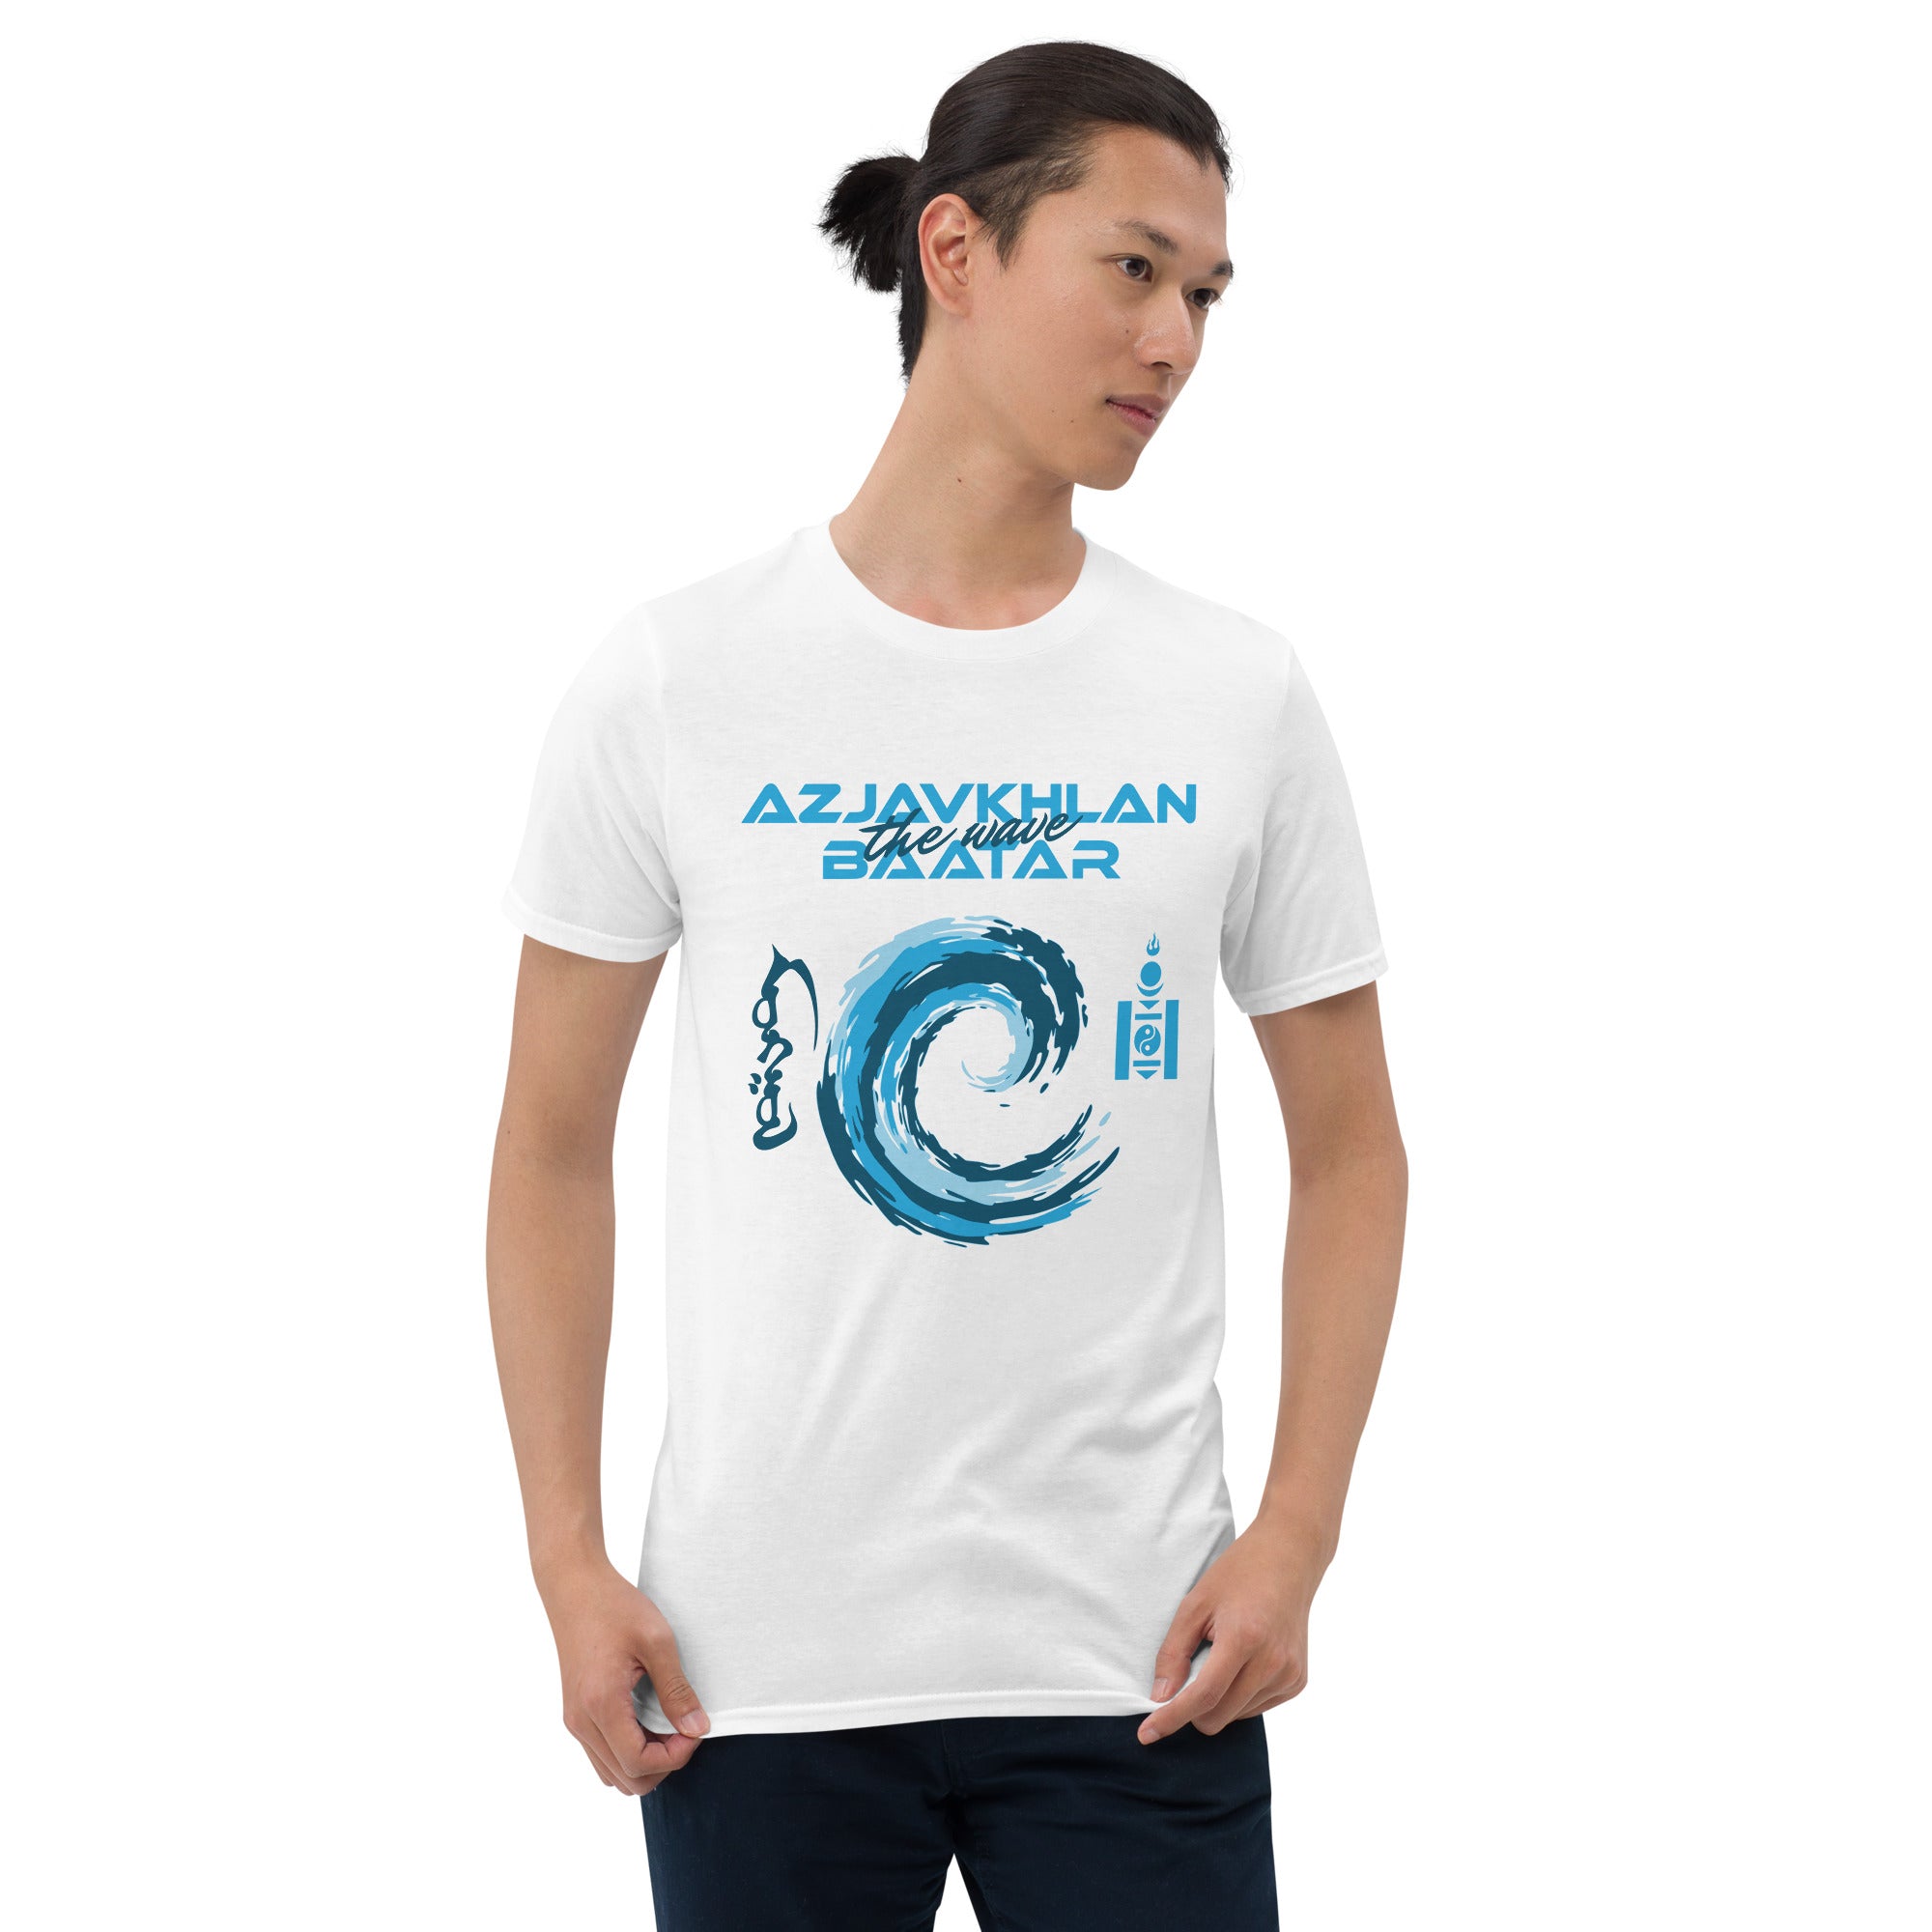 Azjavkhlan "The Wave"  Baatar  Unisex T-Shirt AB1